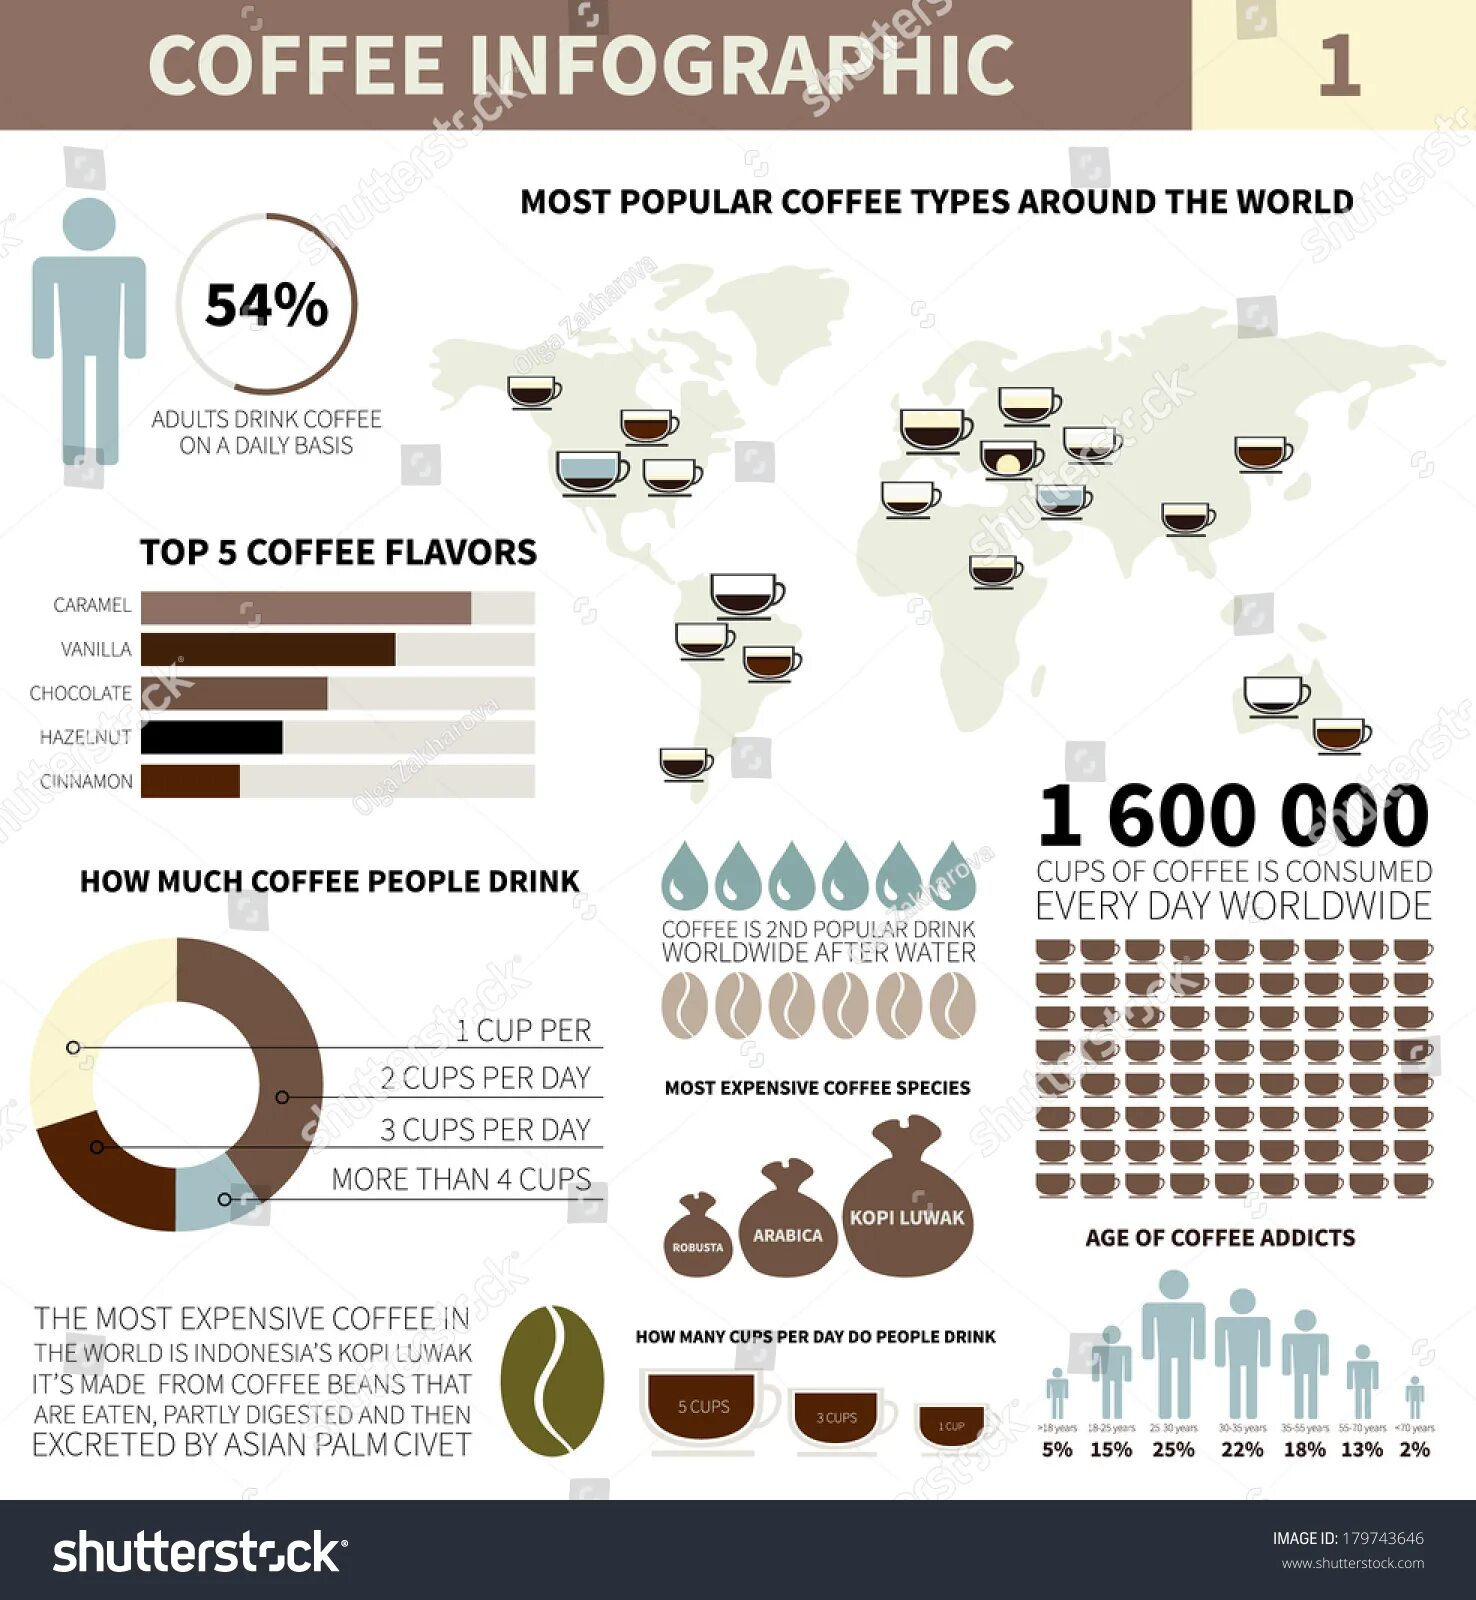 Сколько человек пьют кофе. Инфографика кофе. Статистика кофе. Статистика потребления кофе. Инфографика потребления кофе.